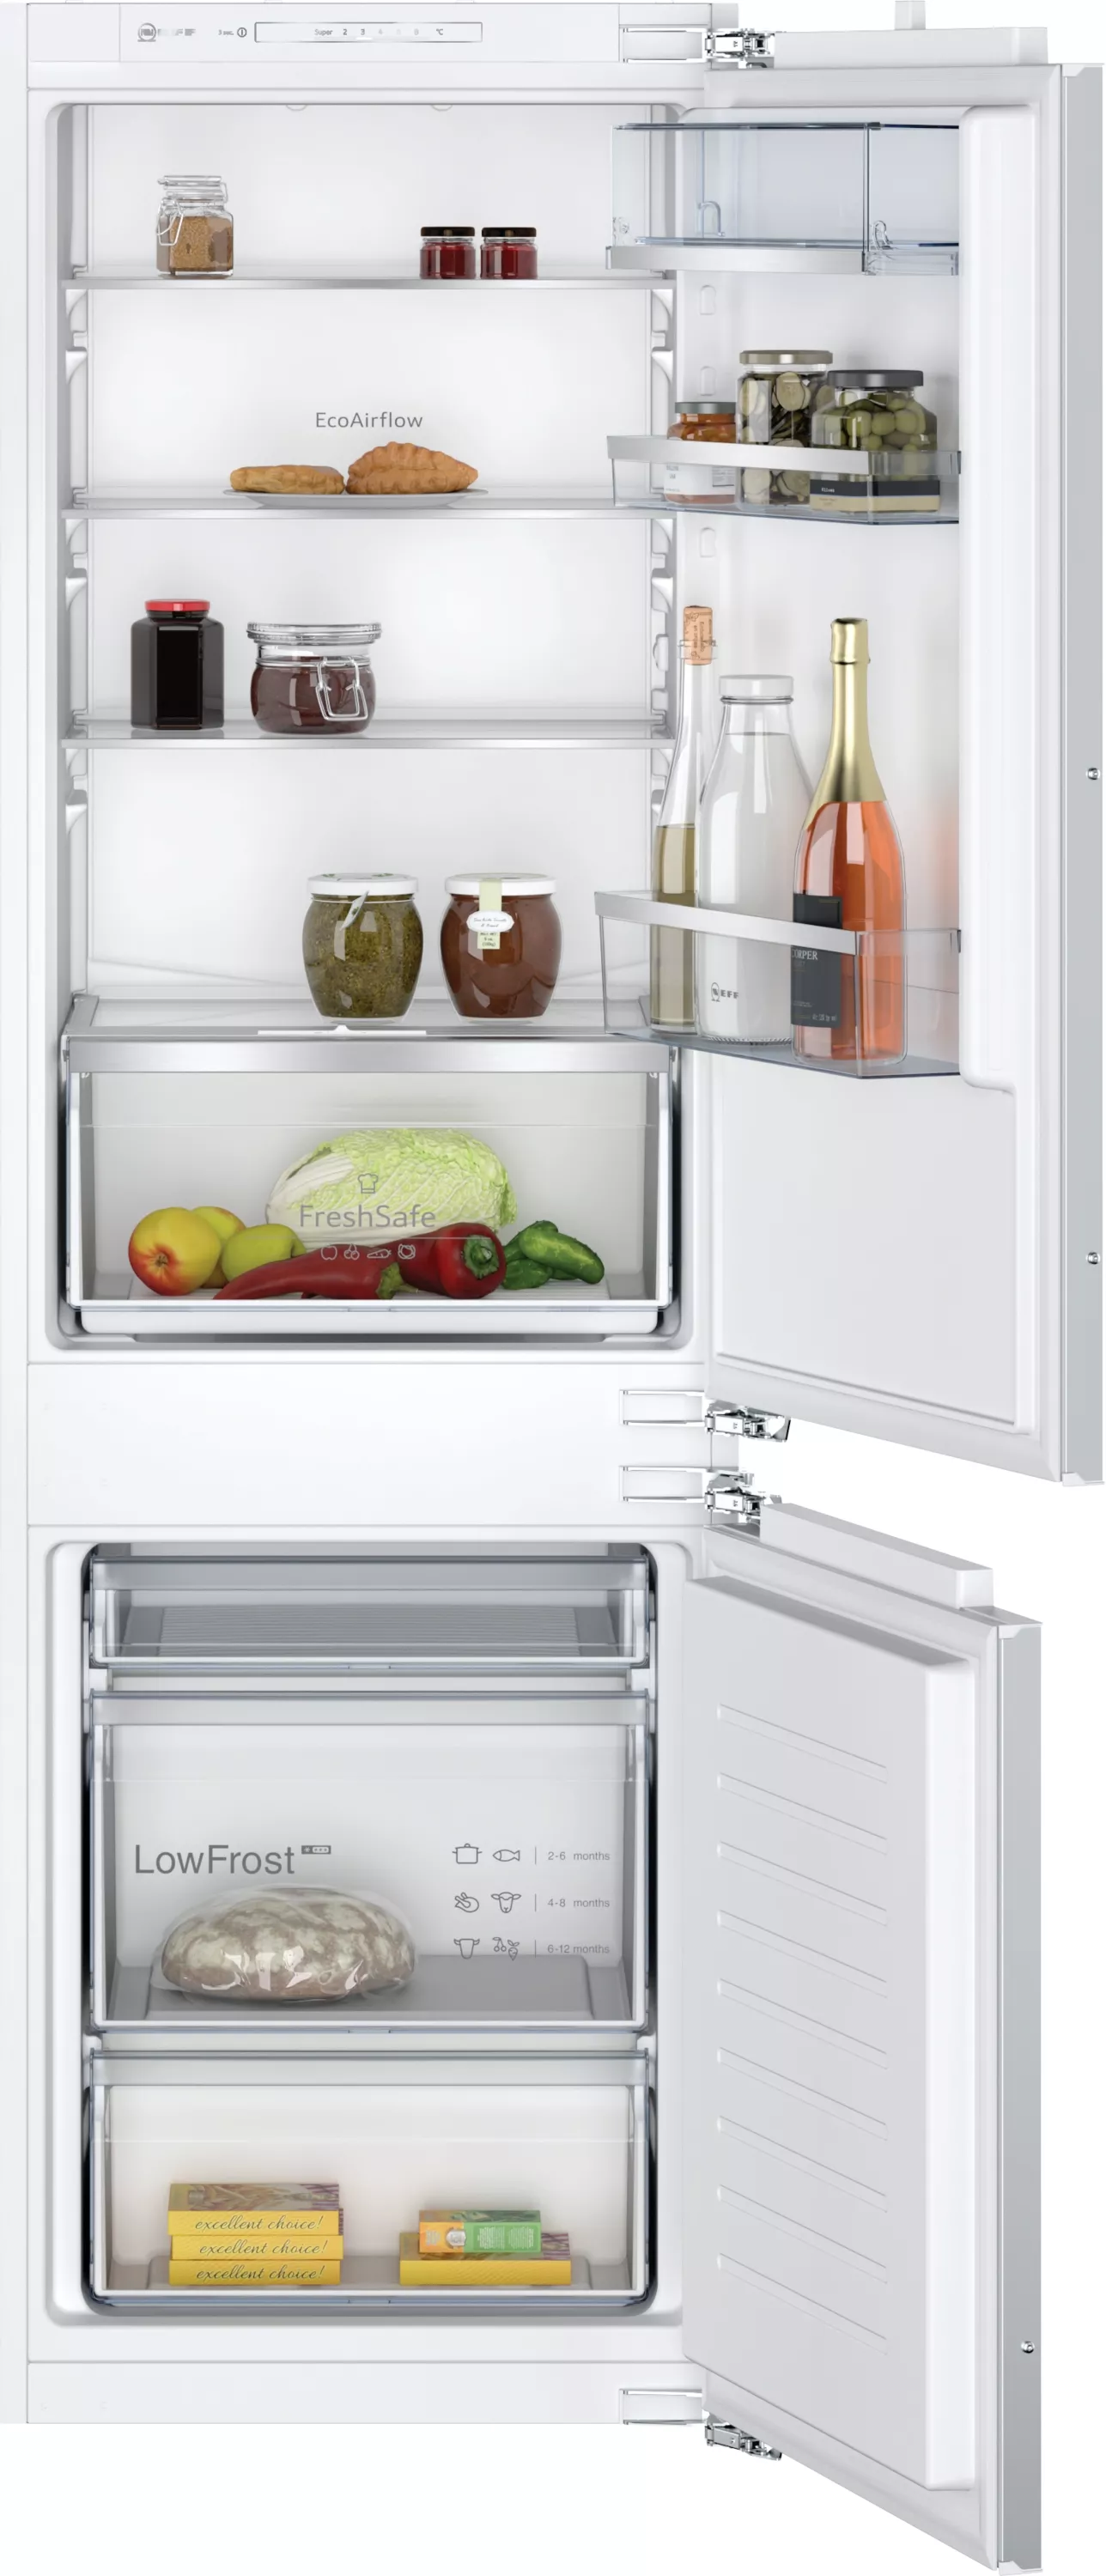 NEFF Einbau Kühl-Kühlschrank,  KI5862FE0,  177.2 cm hoch,  54.1 cm breit, Gefrierfach